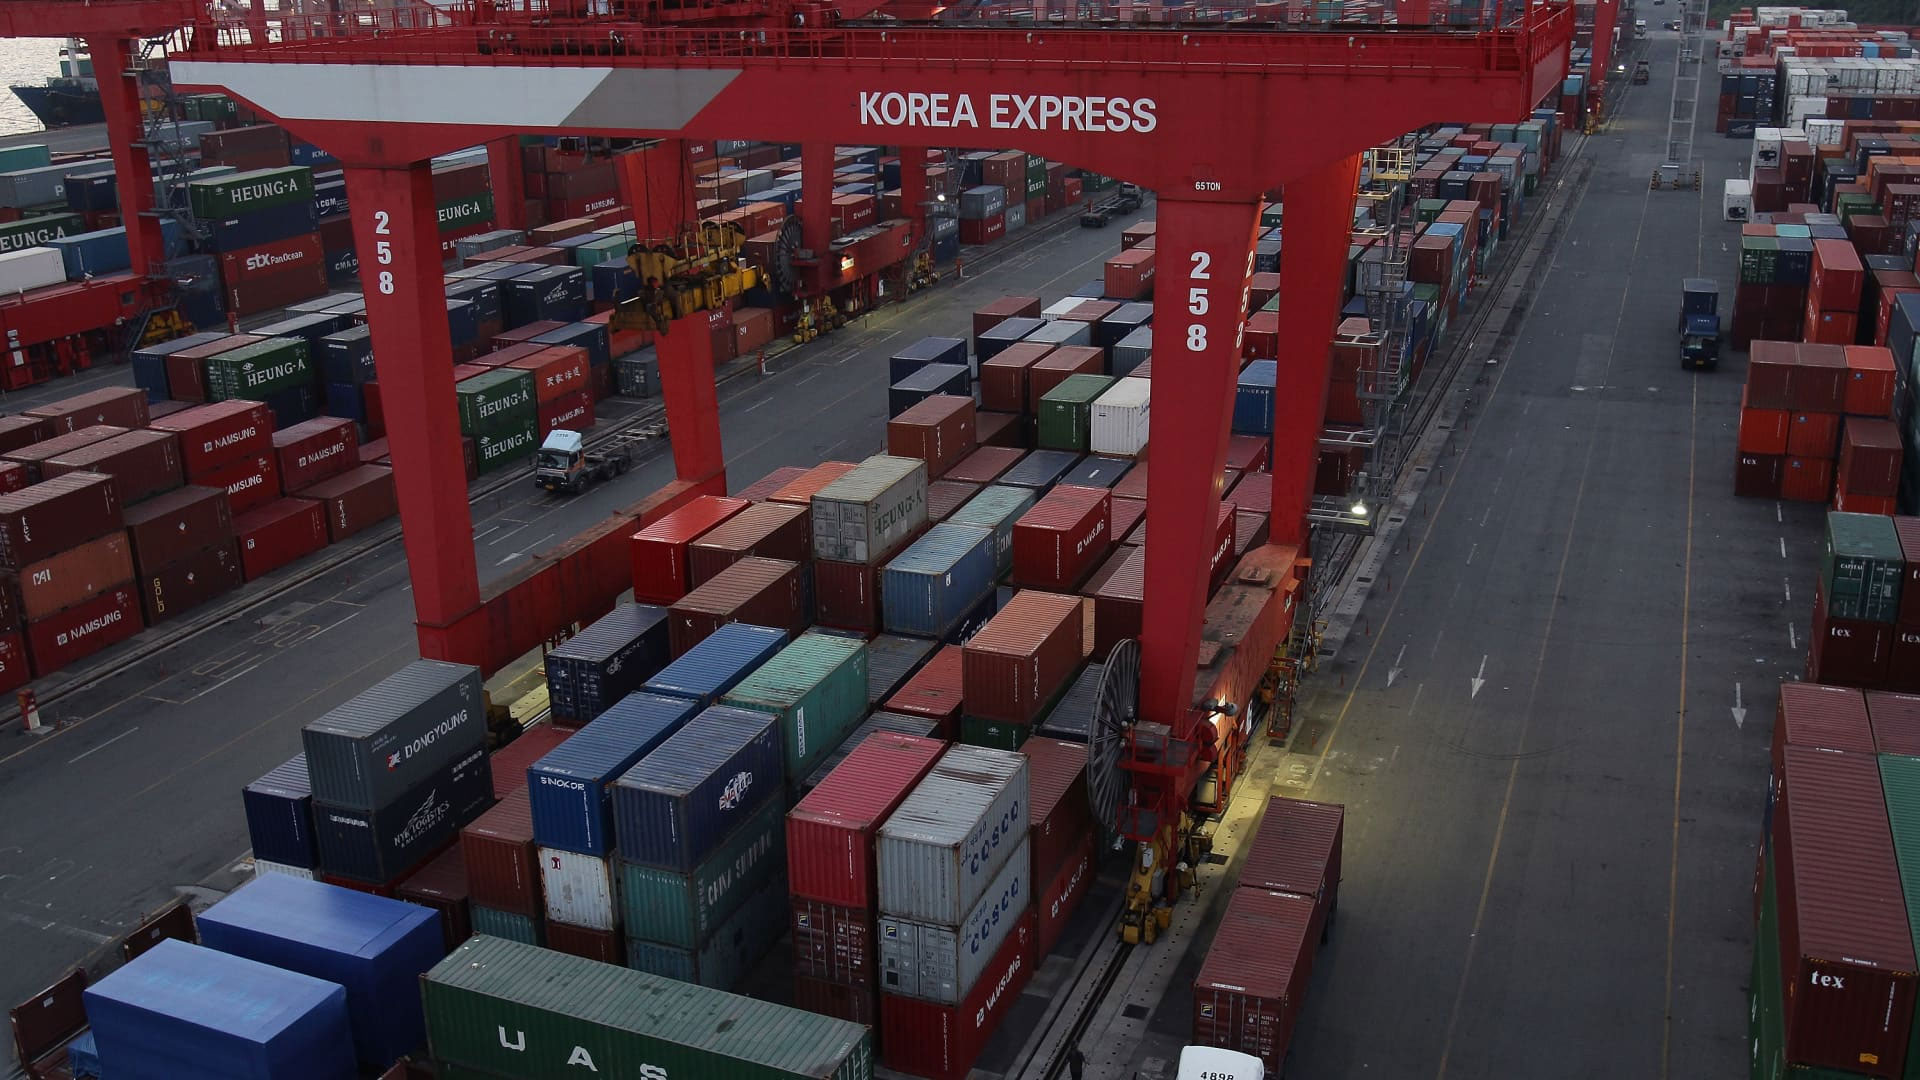 تراجع صادرات كوريا الجنوبية للمرة الأولى في عامين